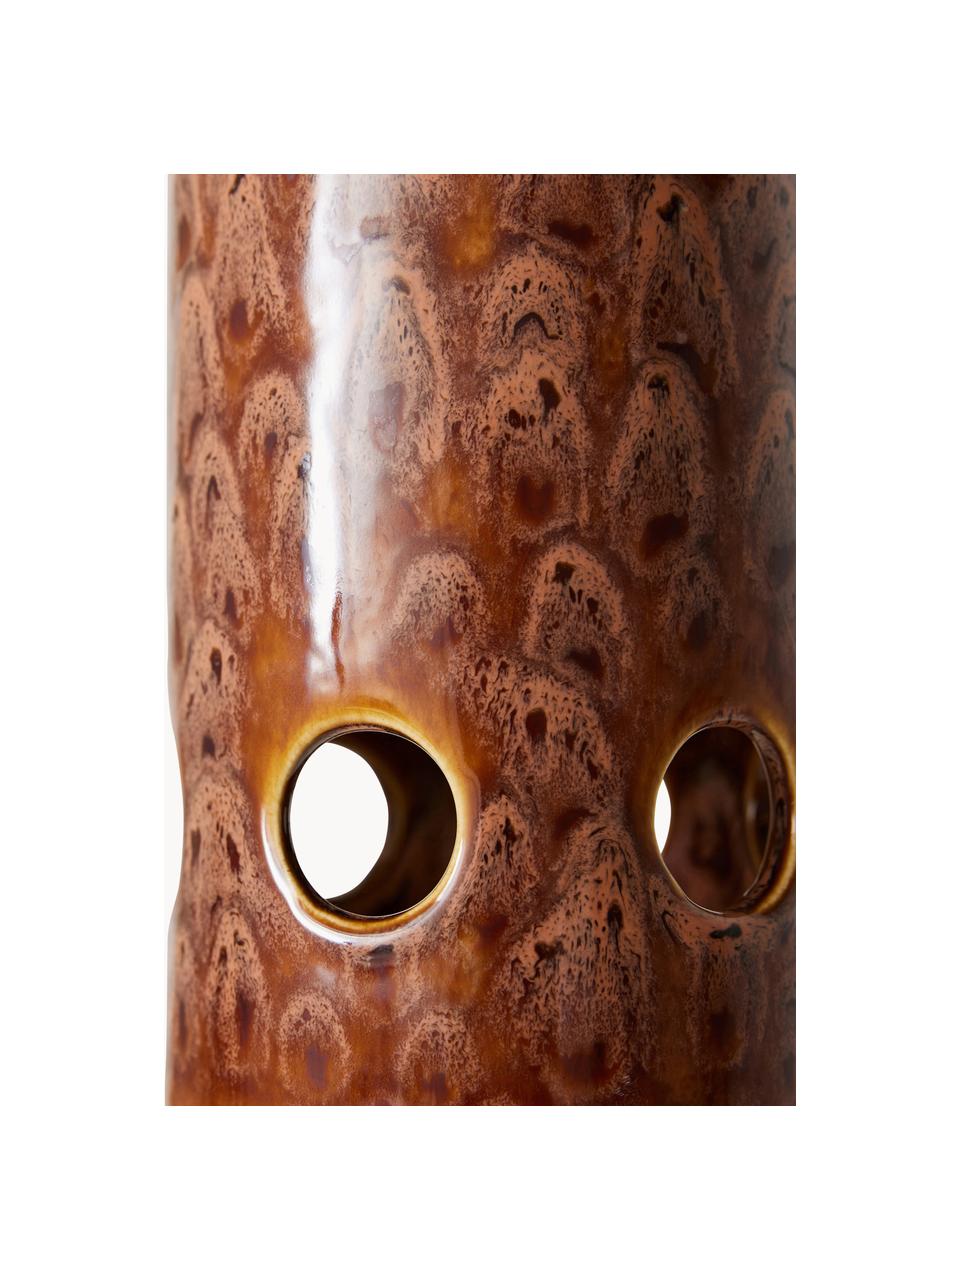 Lámpara de techo artesanal Lychee, Pantalla: cerámica, Cable: cubierto en tela, Turrón, Ø 11 x Al 32 cm